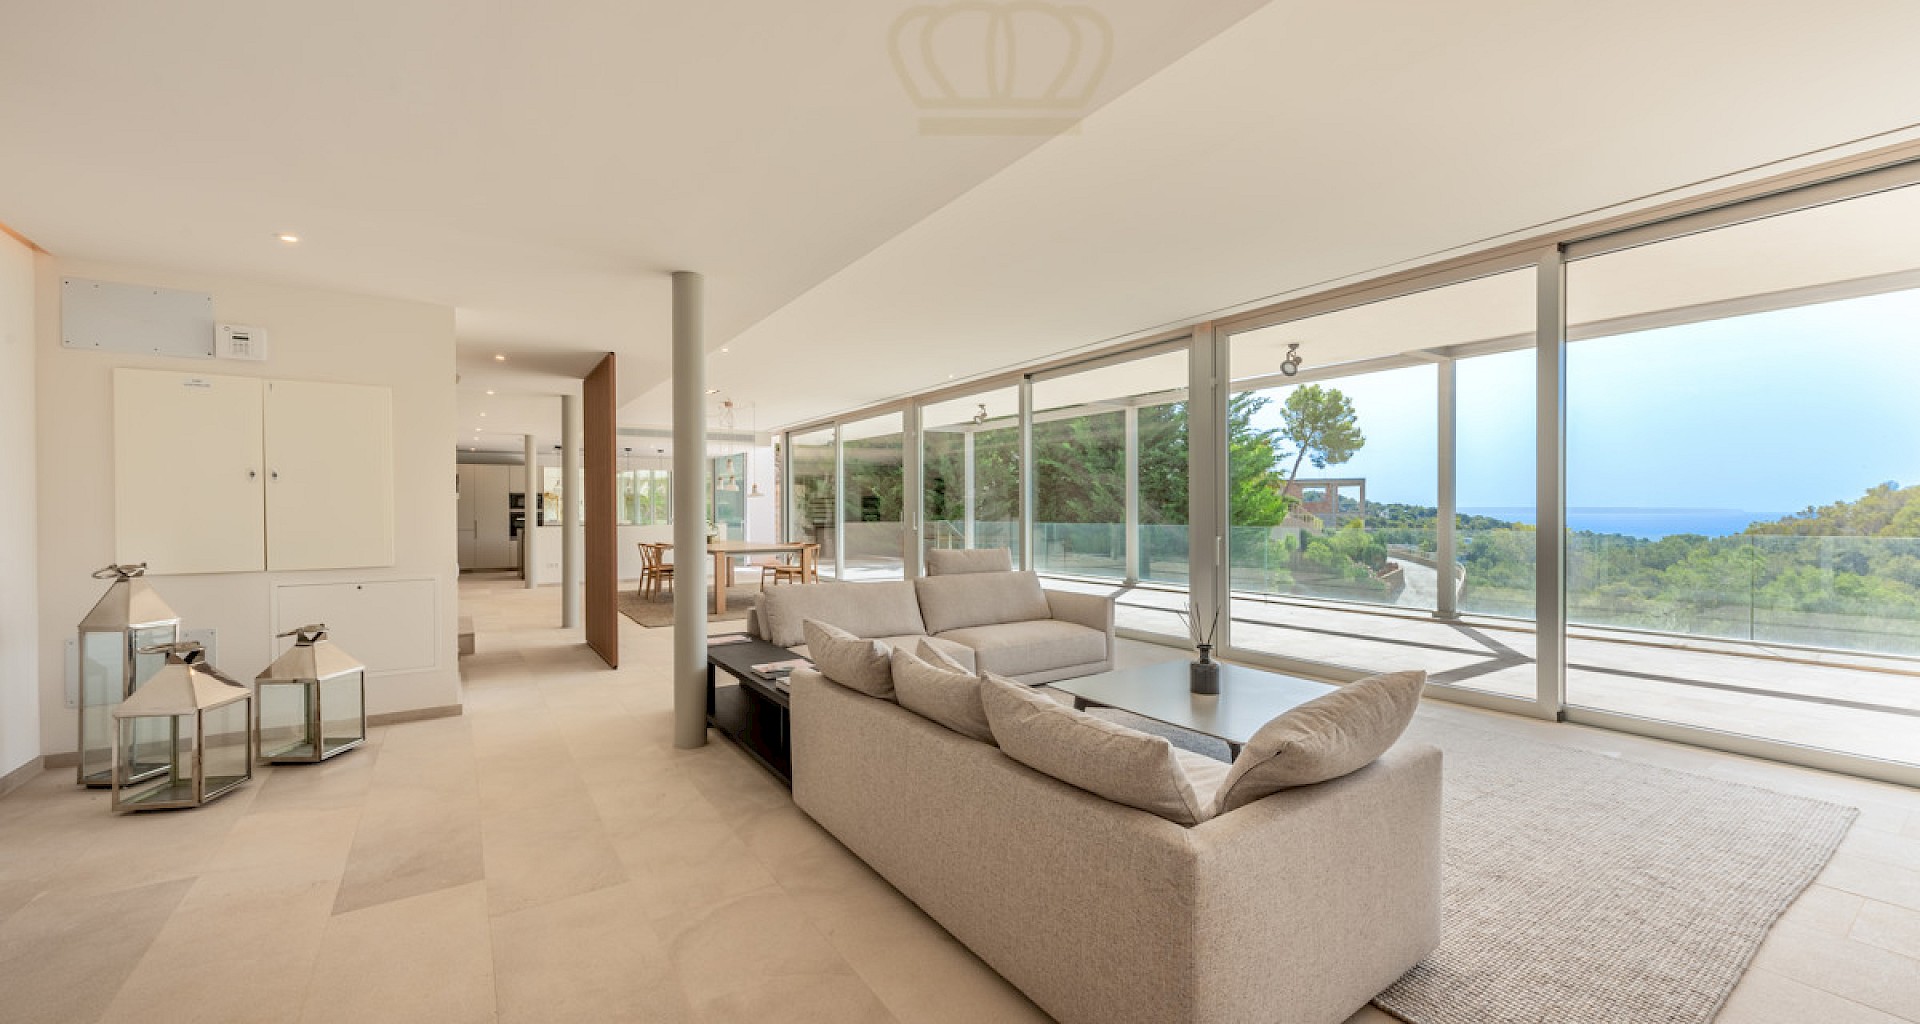 KROHN & LUEDEMANN Moderna villa de lujo en Costa d'en Blanes con vistas al mar en el suroeste de Mallorca Luxus Villa Costa den Blanes 02